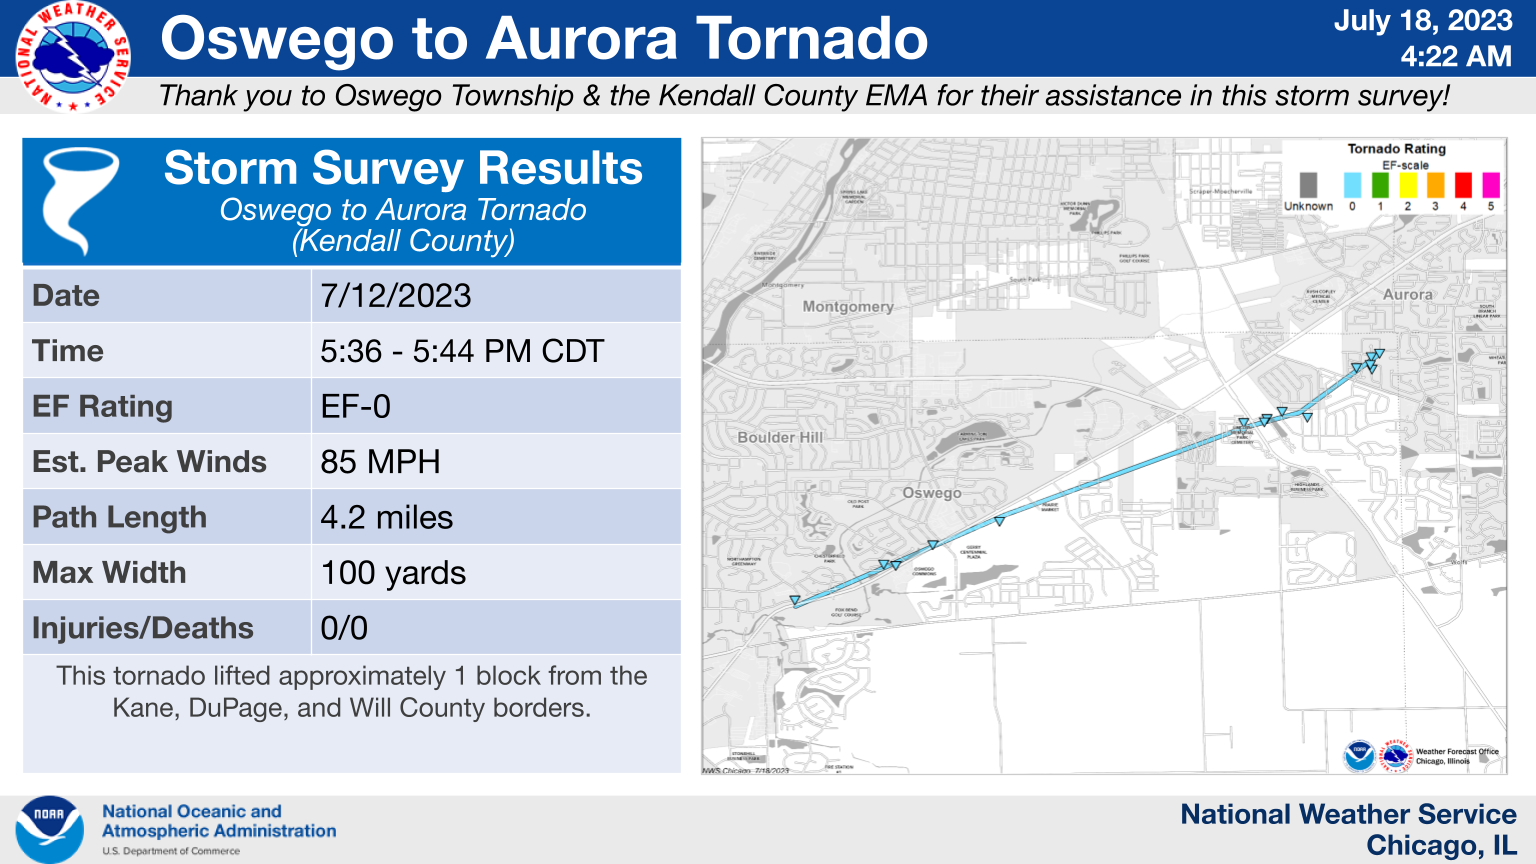 Oswego to Aurora Tornado Map